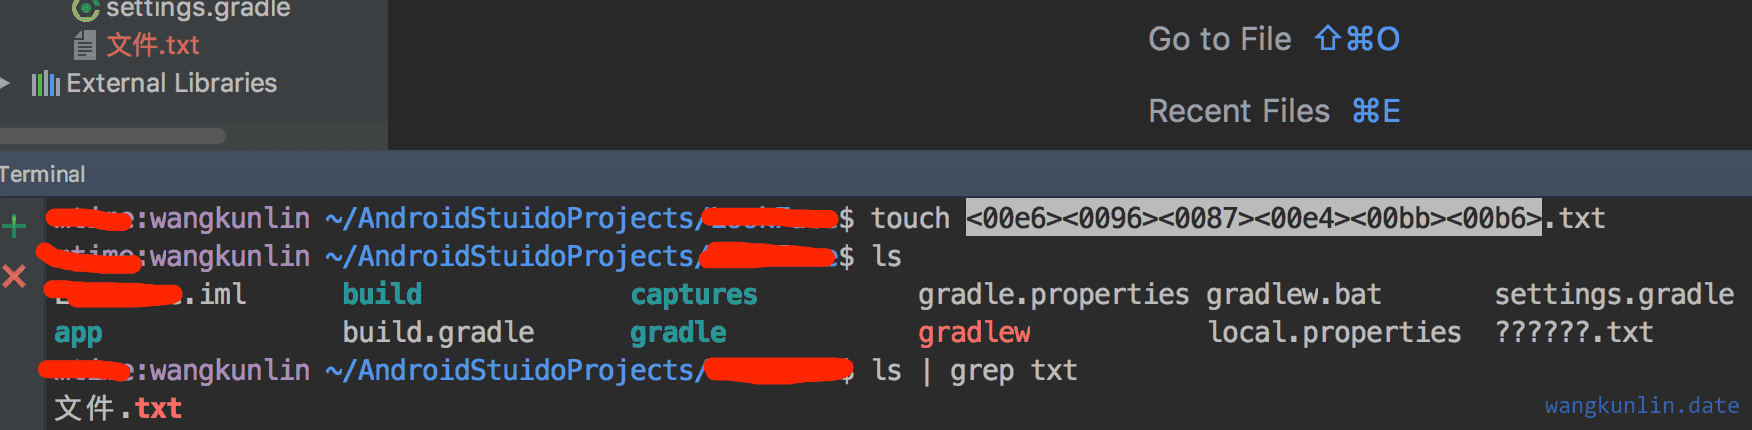  Mac Android Studio 3.0终端中文乱码问题处理”> <br/>
　　</p>
　　<p>直接输入中文会显示& lt; 00 e6> & lt; 0096比;云的云,使用ls命令查看会显示& # 63;& # 63;& # 63;一堆问号,使用ls | grep反而正常,具体原因不详<br/>
　　</p>
　　<p>后来在谷歌上找解决方法,有人说</p>
　　<p> </p>
　　
　　<pre类=